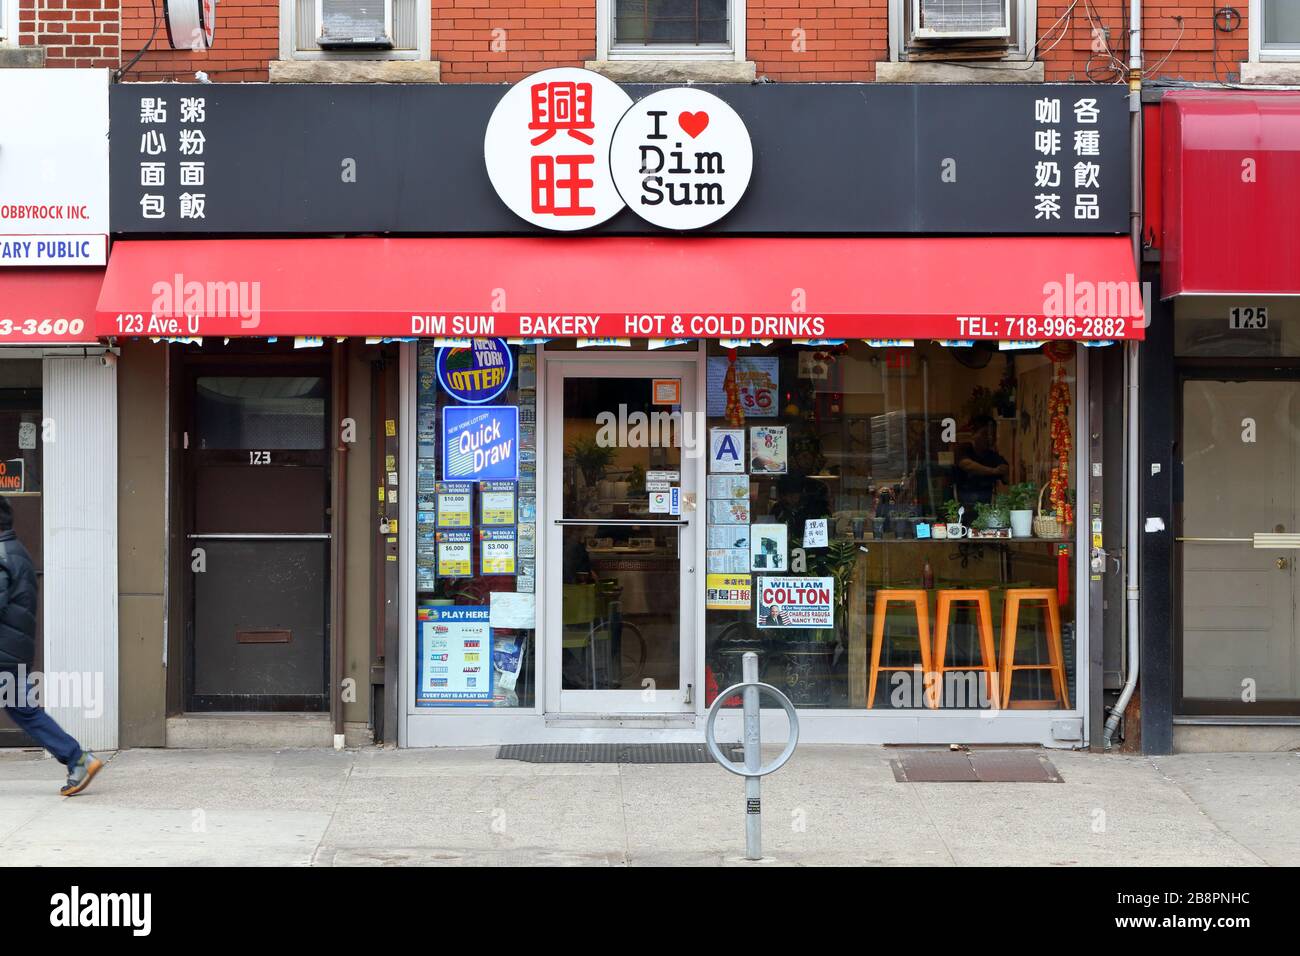 I Love Dimsum, 123 Avenue U, Brooklyn, Nueva York. Foto del escaparate de Nueva York de una panadería y cafetería china dim sum. Foto de stock